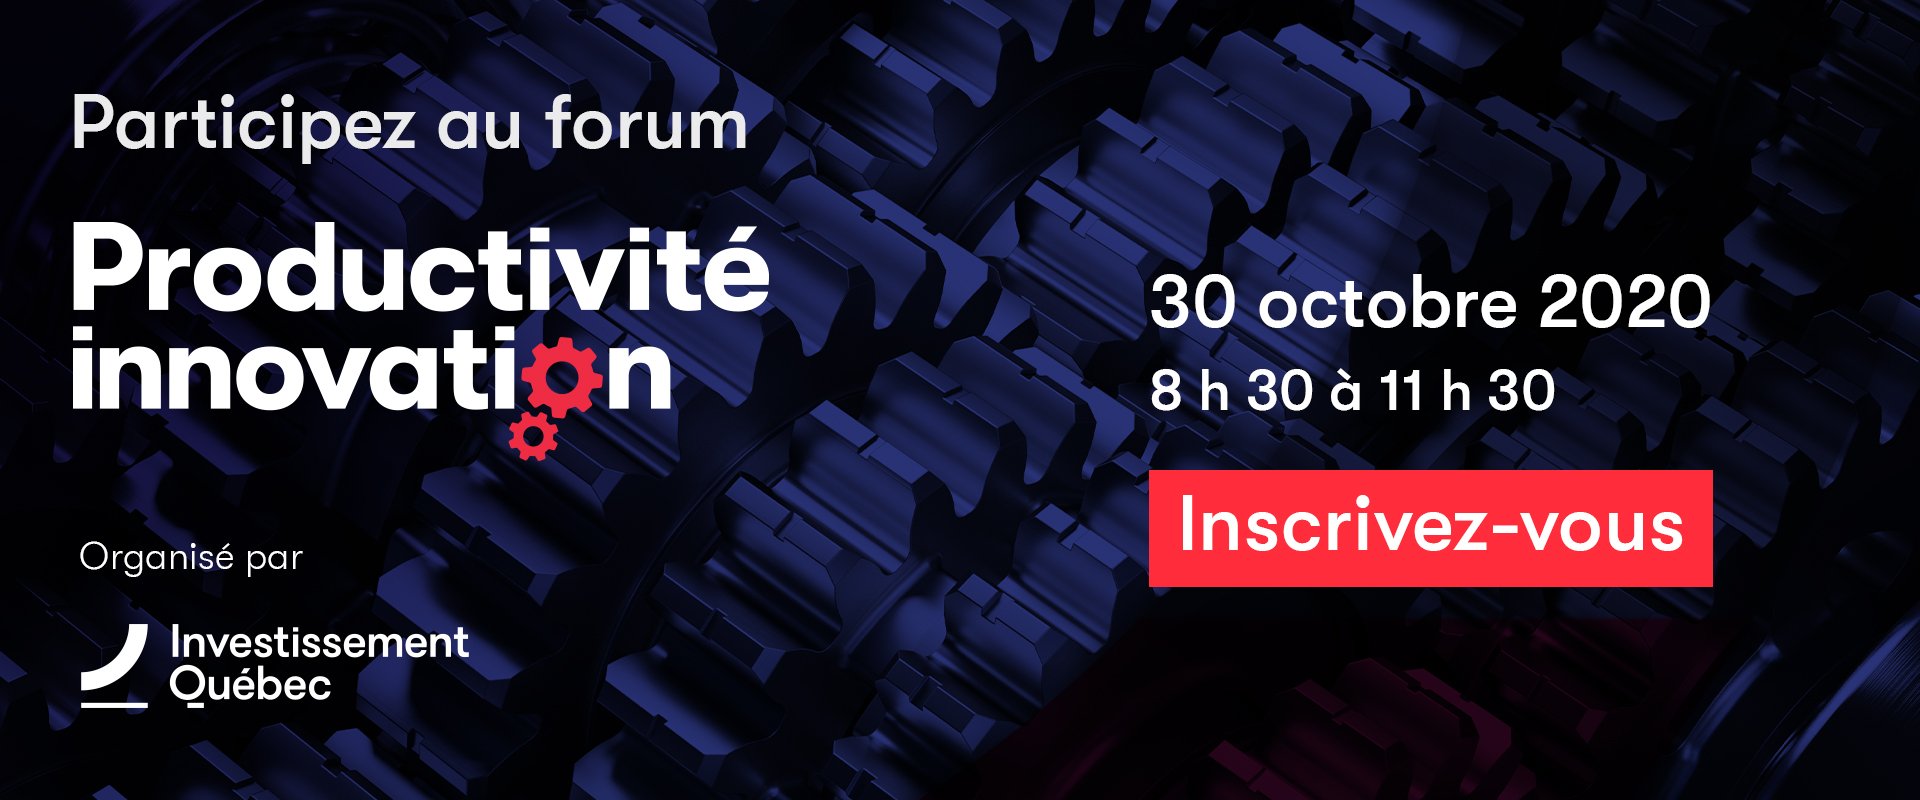 Participez au forum Productivité Innovation. 30 octobre 2020 de 8h30 à 11h30. Inscrivez-vous